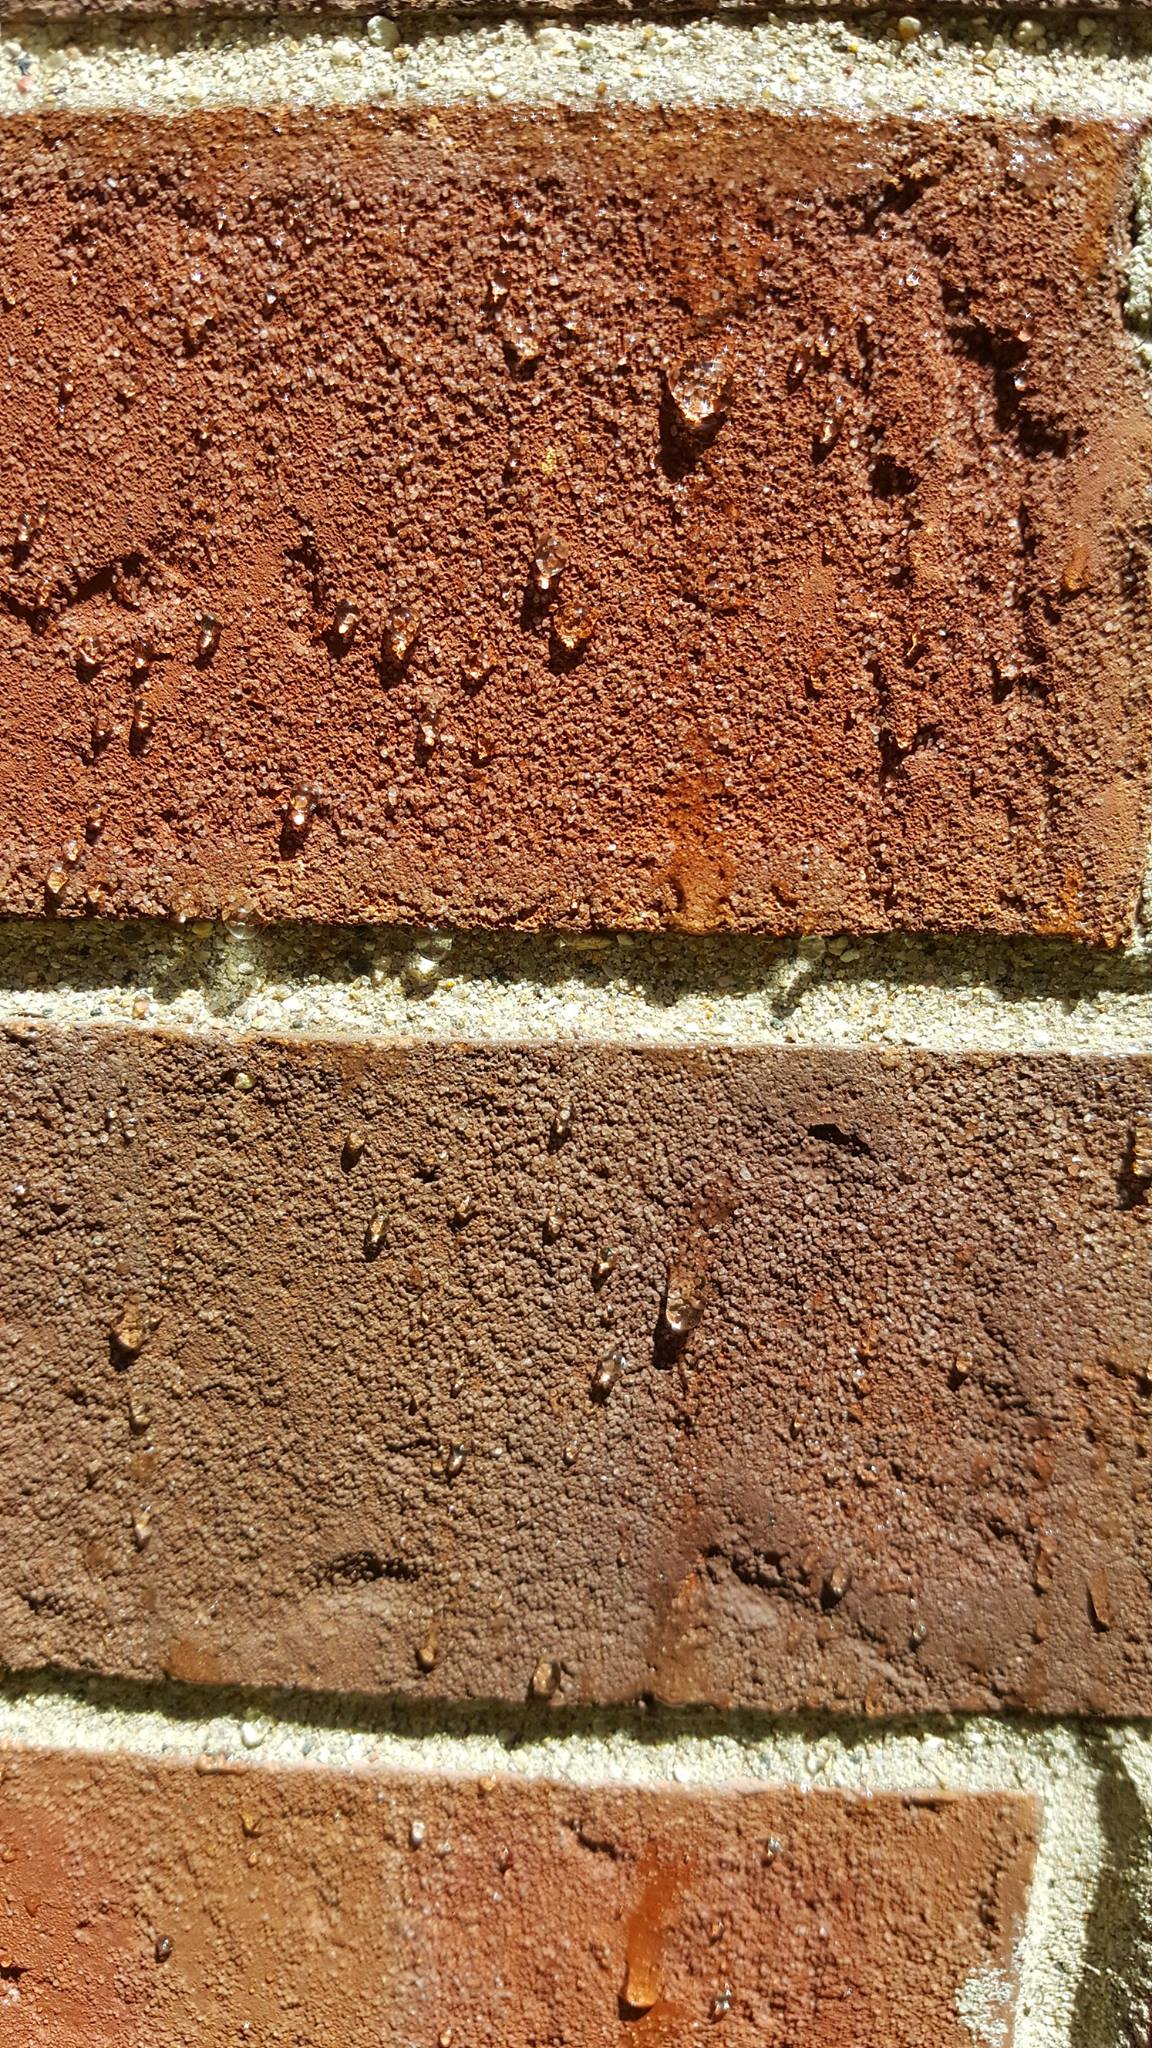 Brick waterproofing